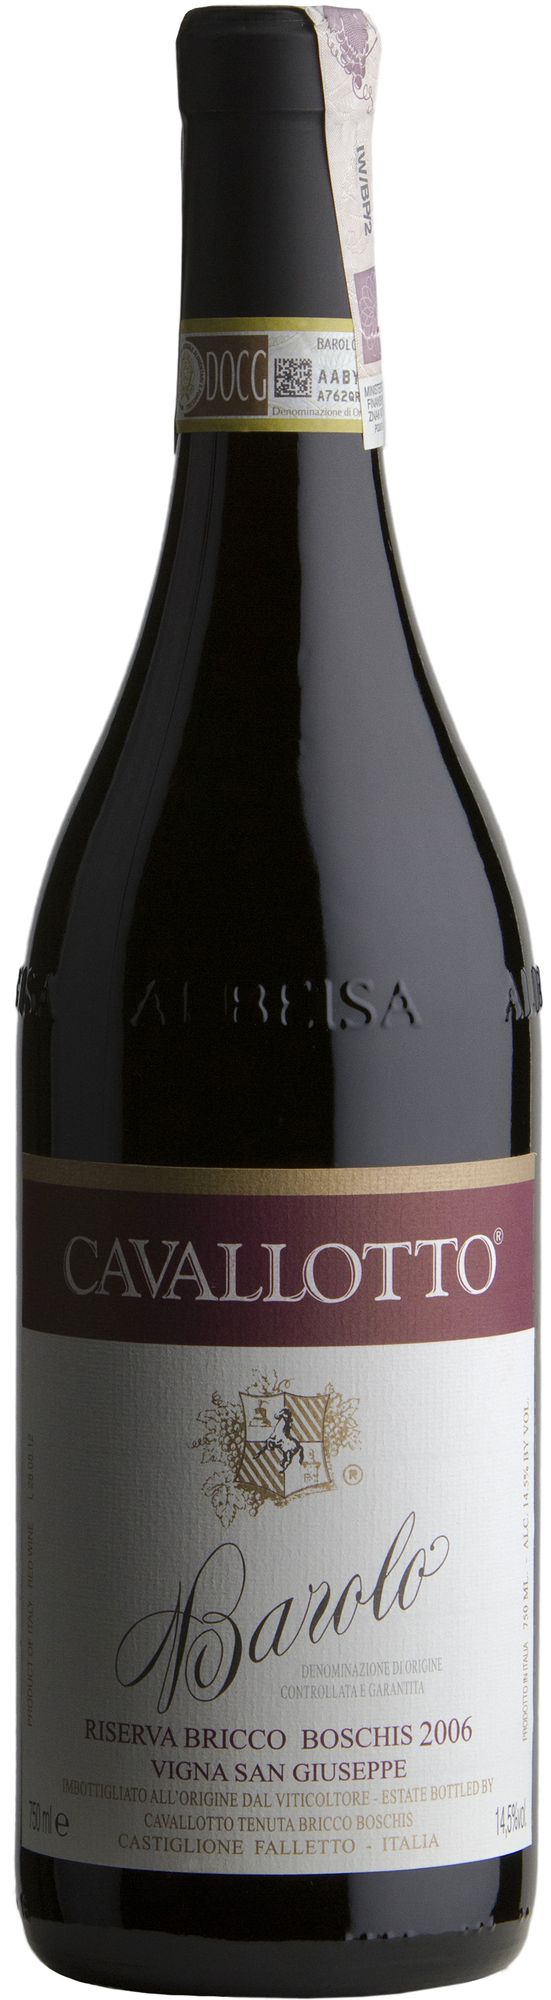 Wino Cavallotto San Giuseppe Barolo Riserva DOCG